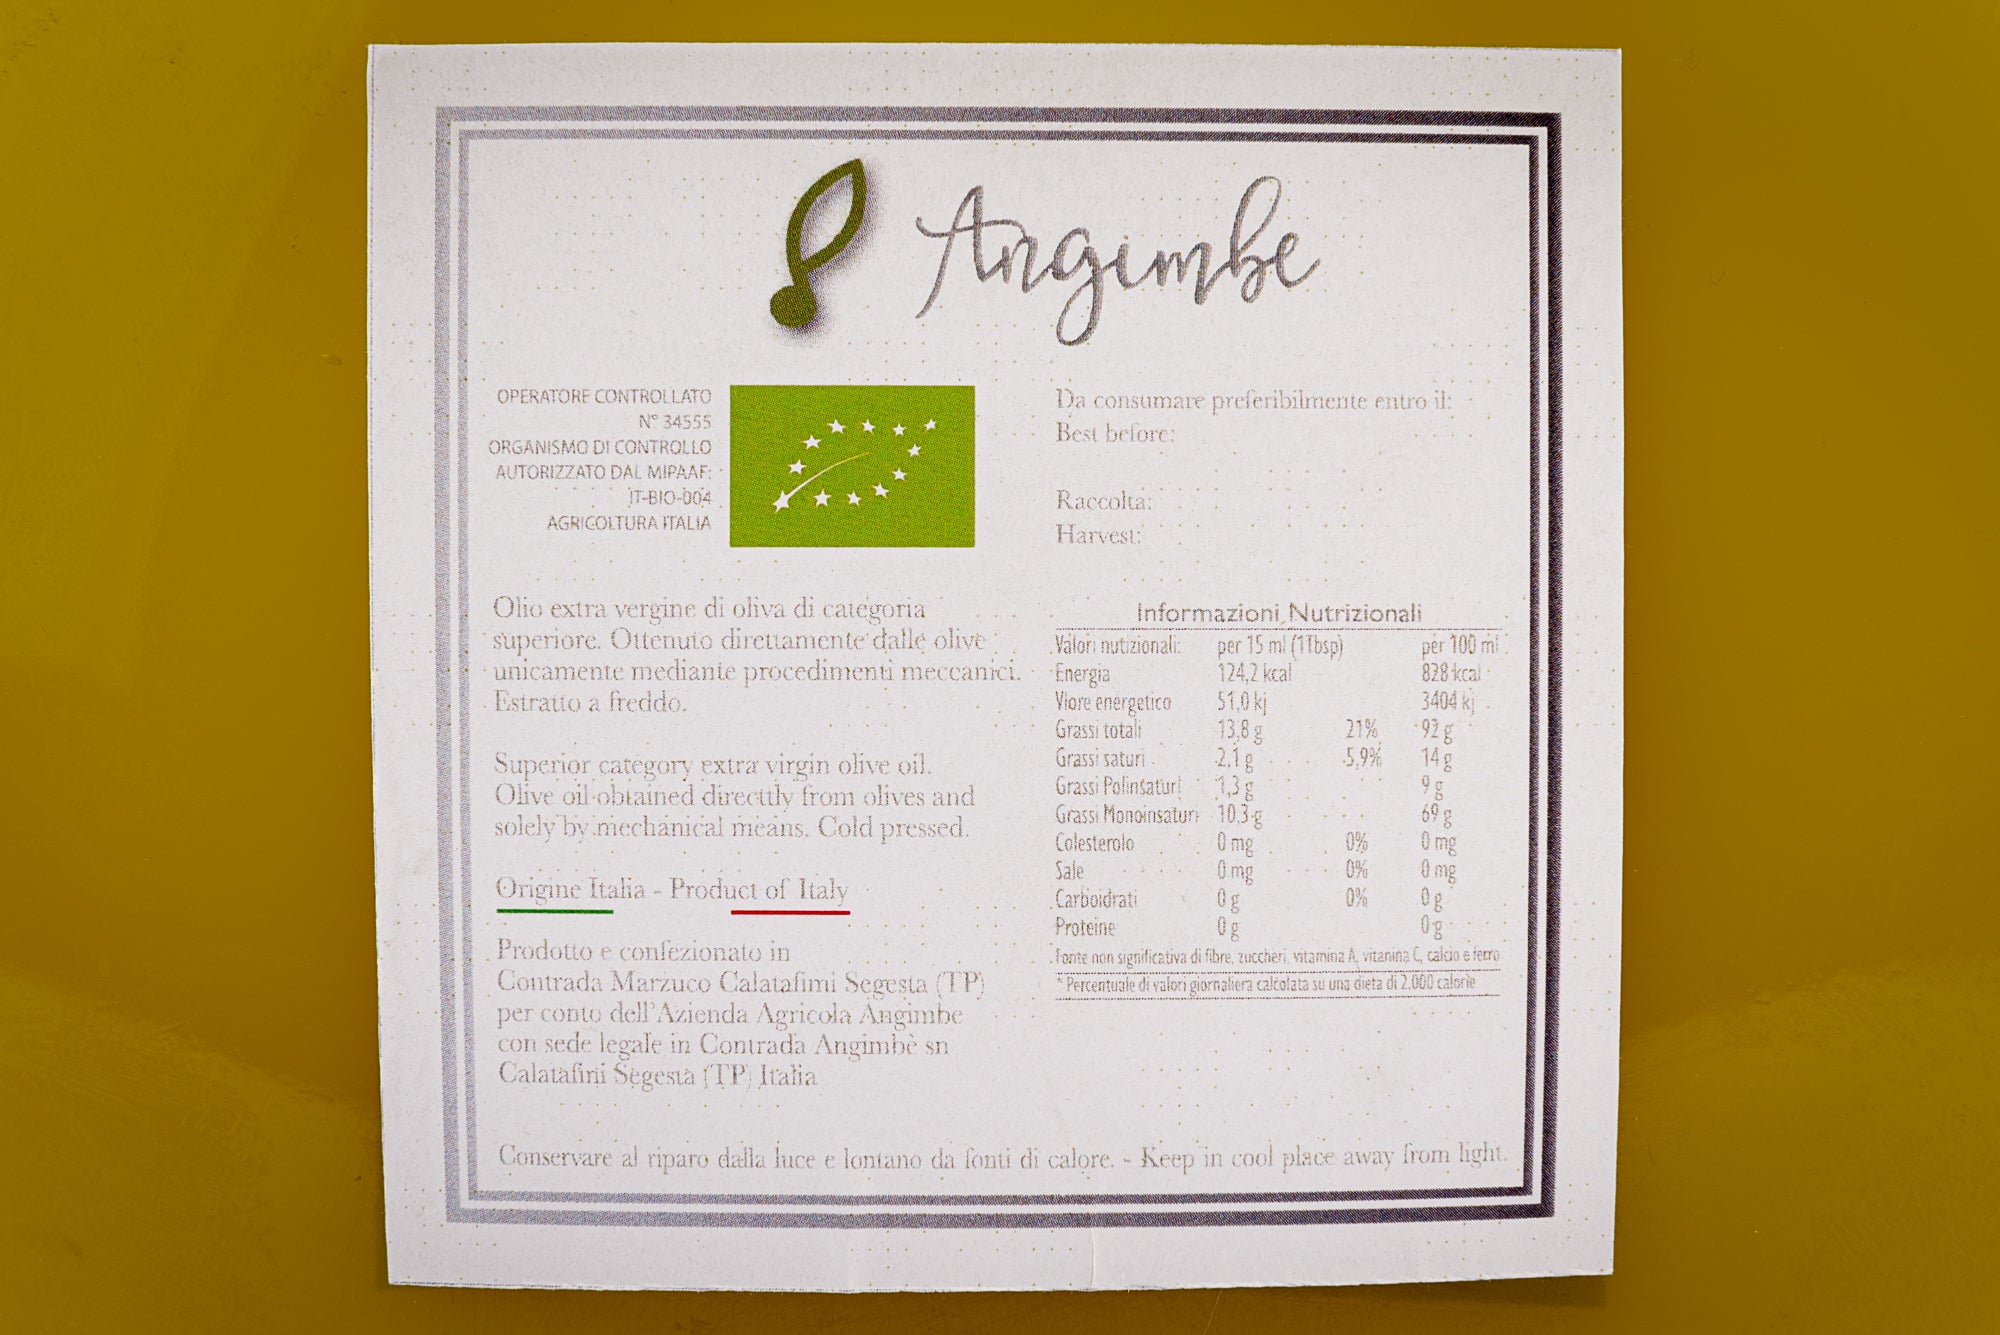 Proprietà e calorie dell'olio di oliva Angimbe